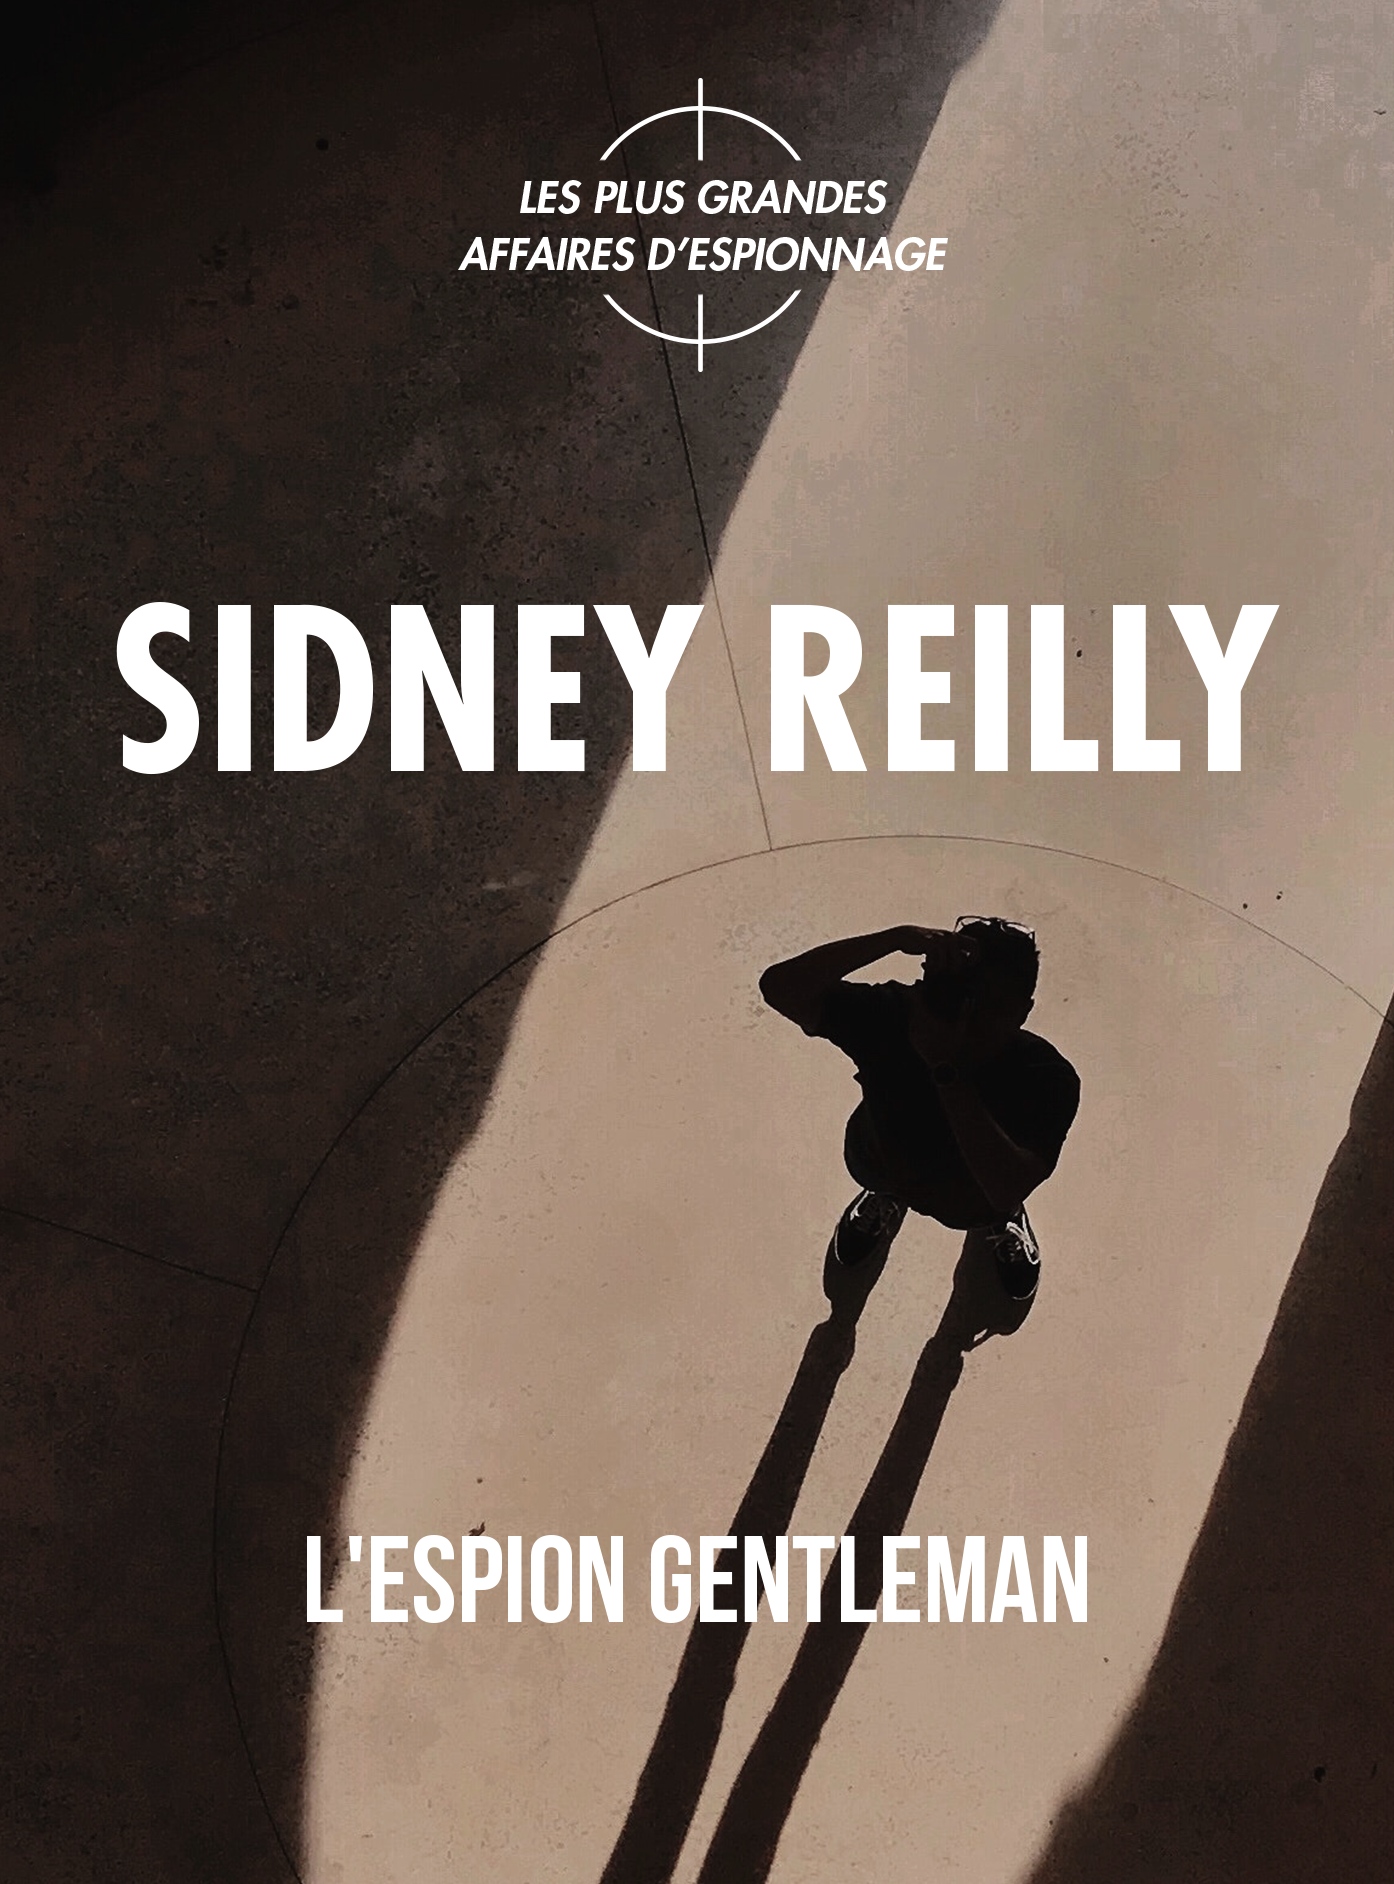 Sidney Reilly, l’espion gentleman